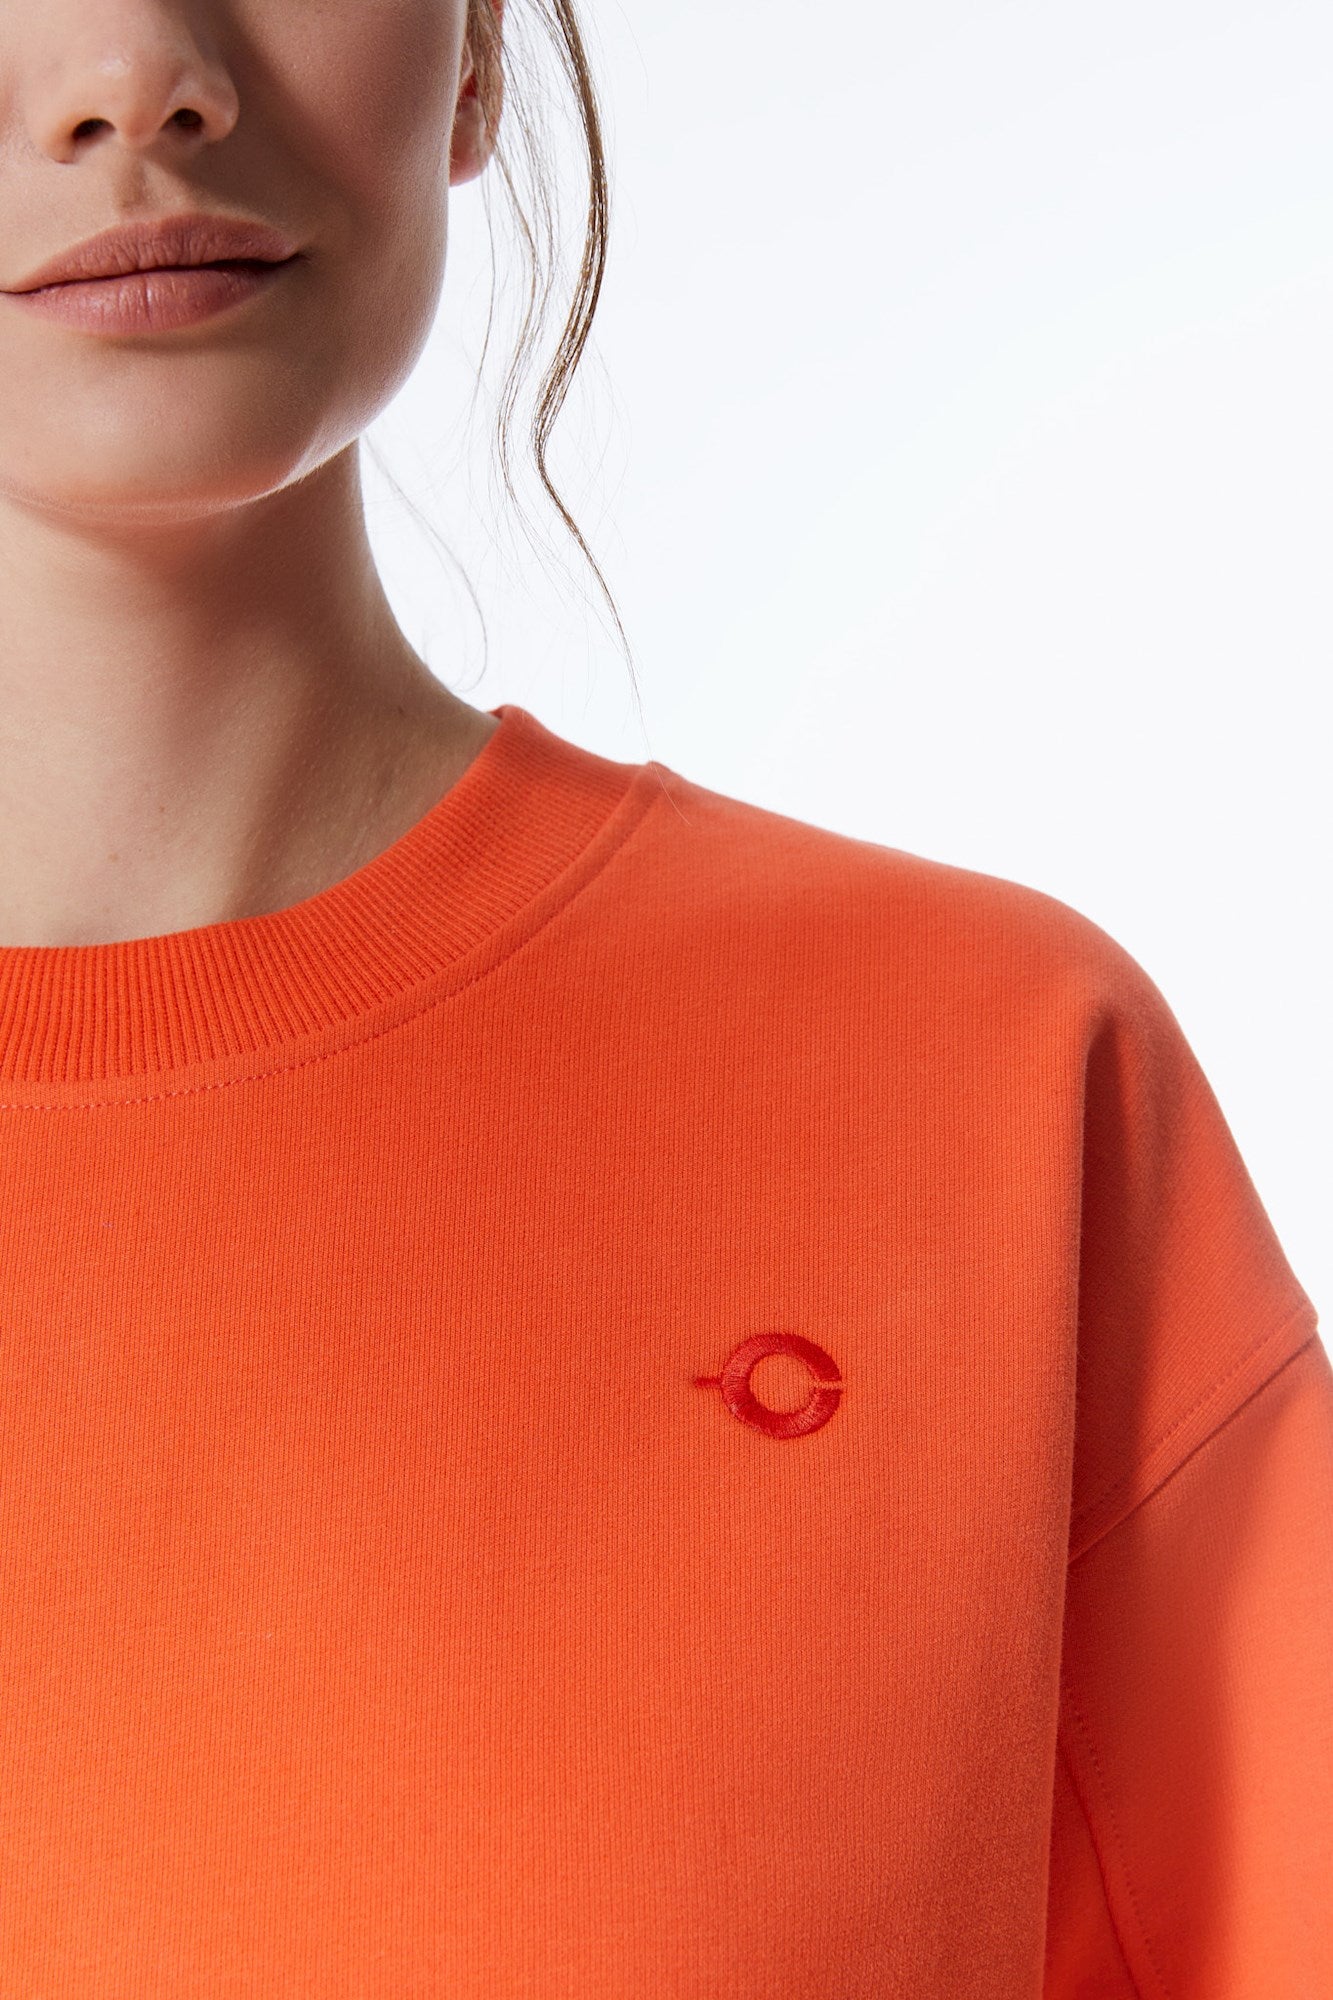 Elsa - Langarm-Sweatshirt mit Rundhalsausschnitt - Orange